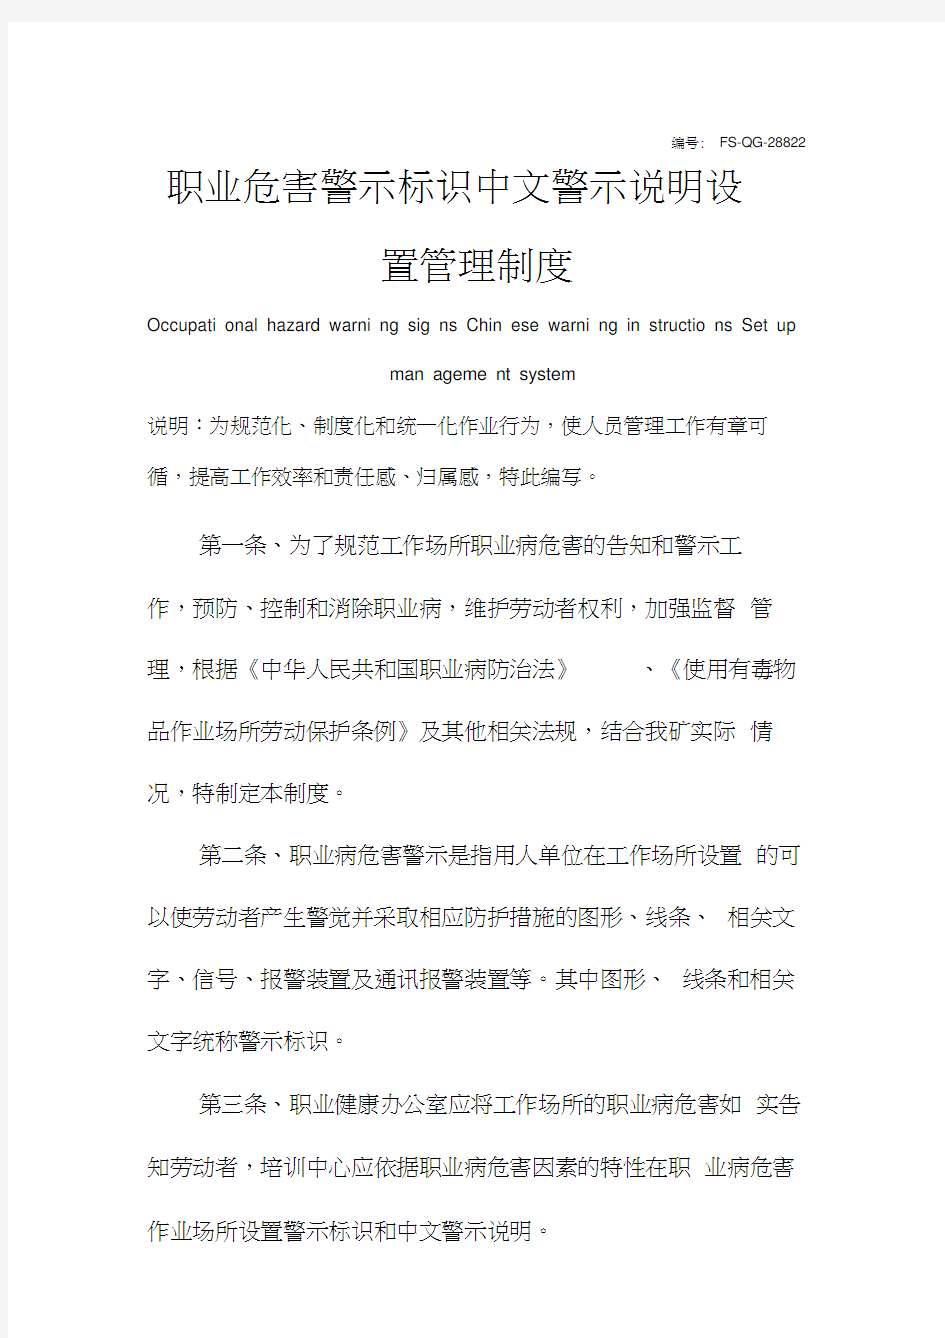 职业危害警示标识中文警示说明设置管理制度